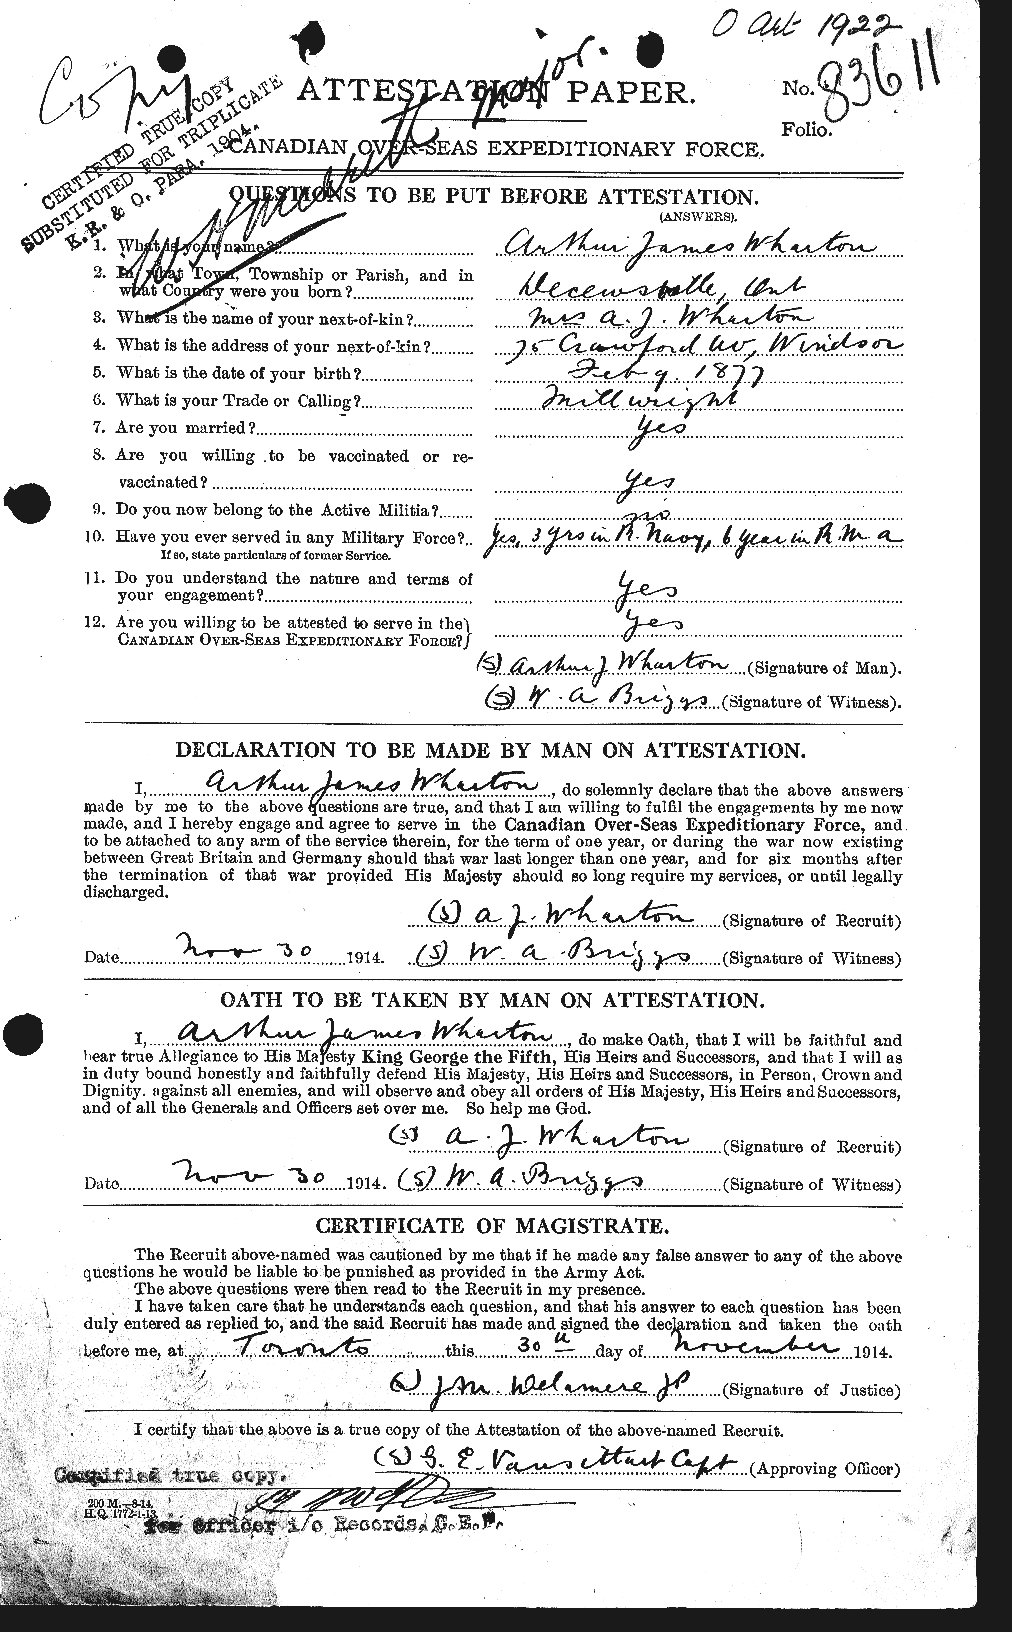 Dossiers du Personnel de la Première Guerre mondiale - CEC 668219a